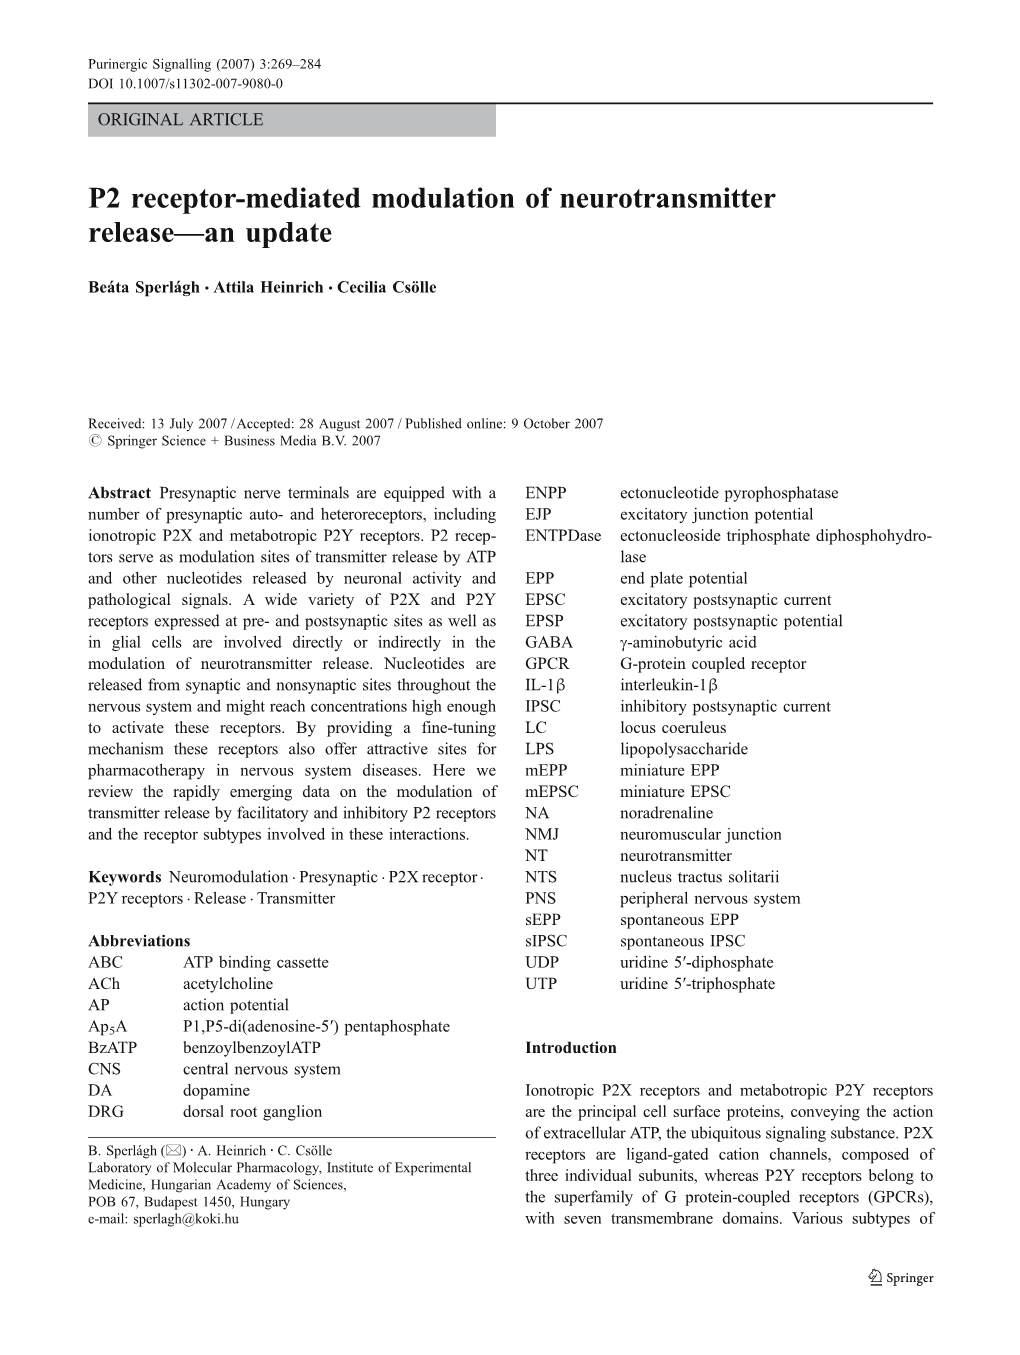 P2 Receptor-Mediated Modulation of Neurotransmitter Release—An Update